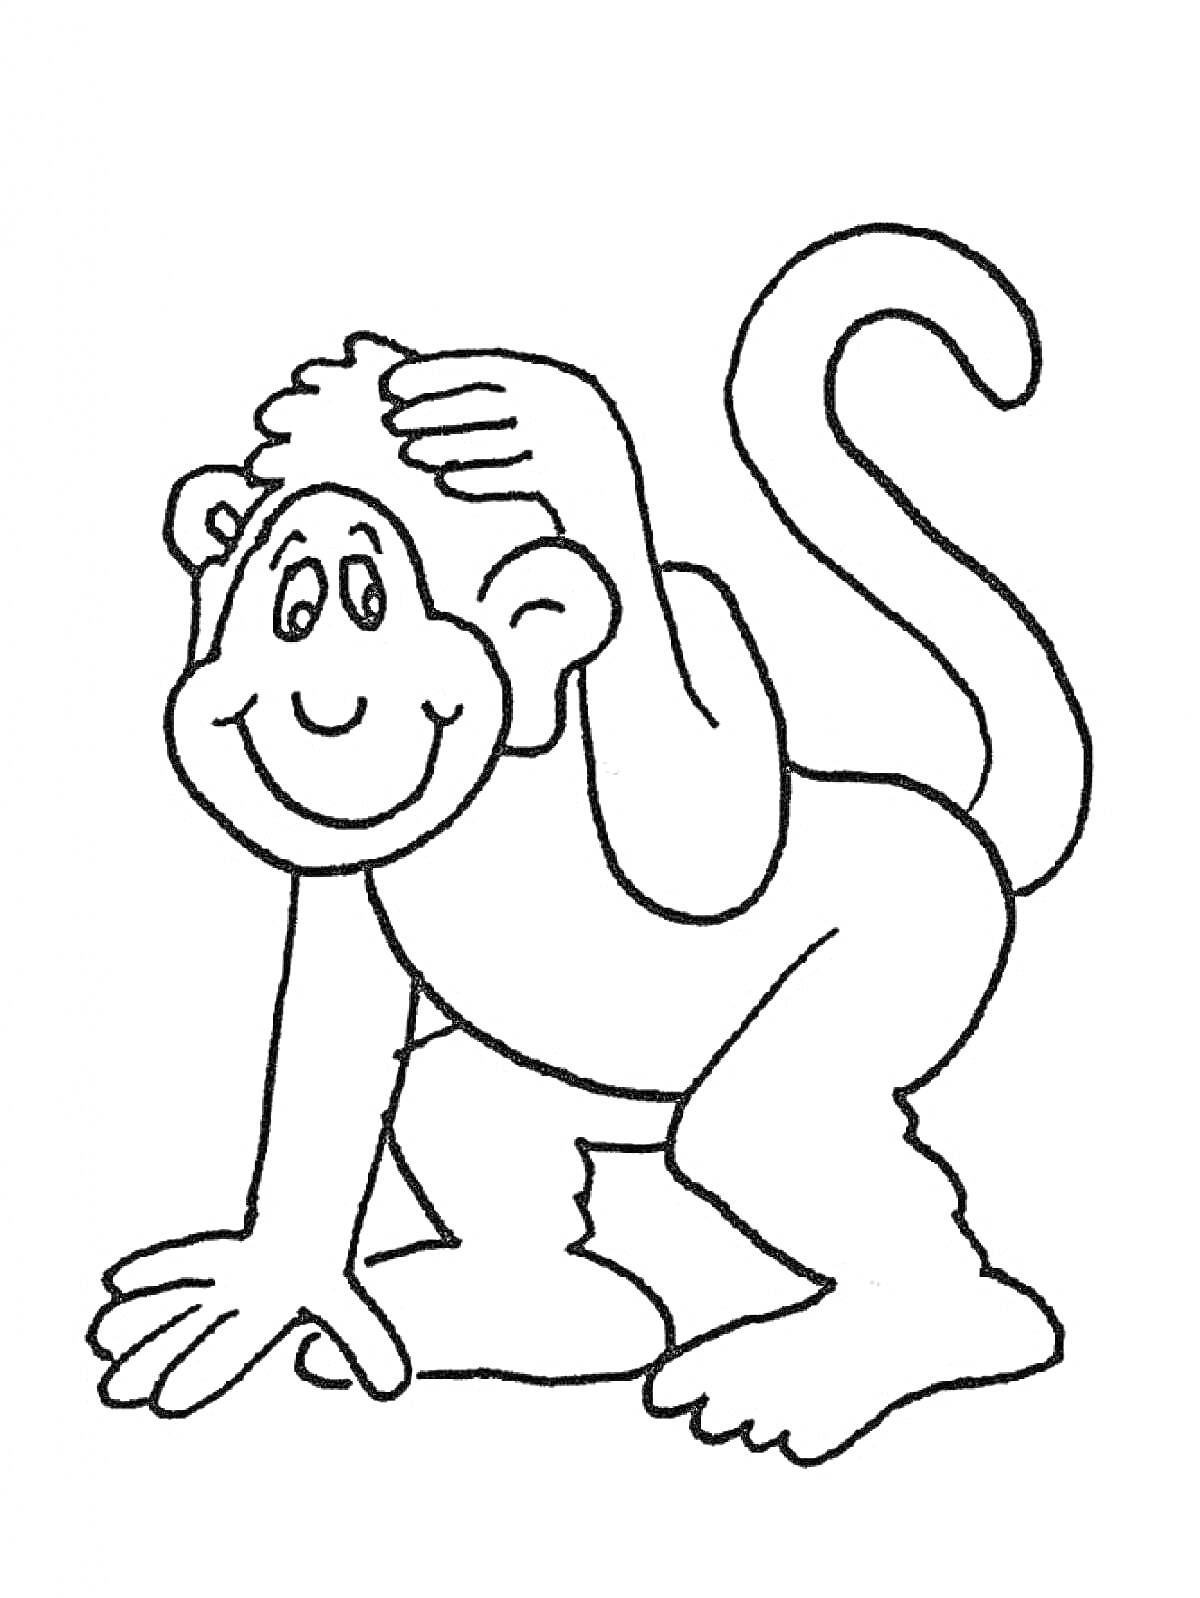 Улыбающаяся обезьяна с рукой на голове